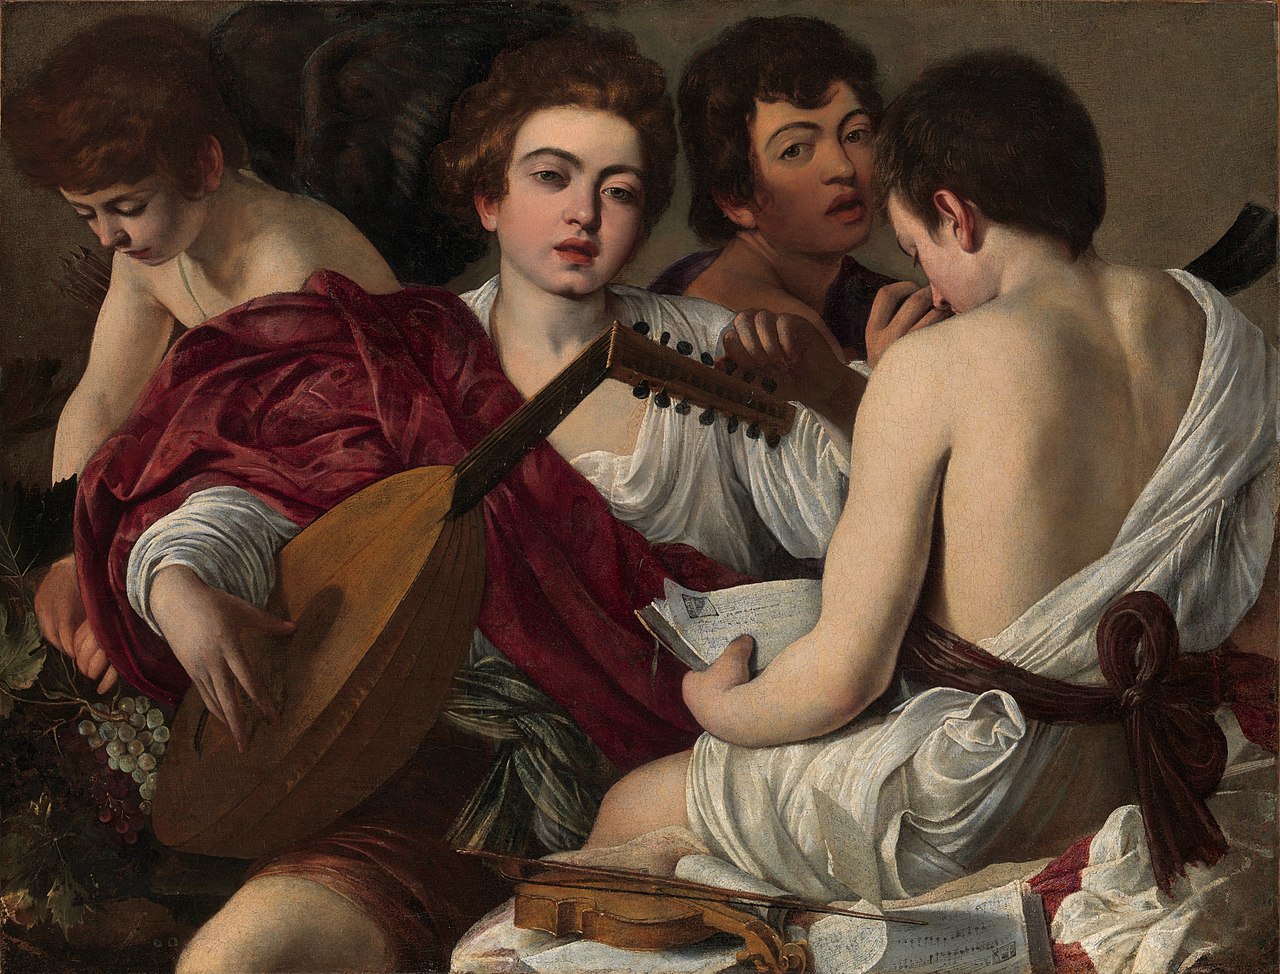 Bergamo vuole rialzarsi con un Caravaggio. “I musici” sono in prestito dal Metropolitan di New York